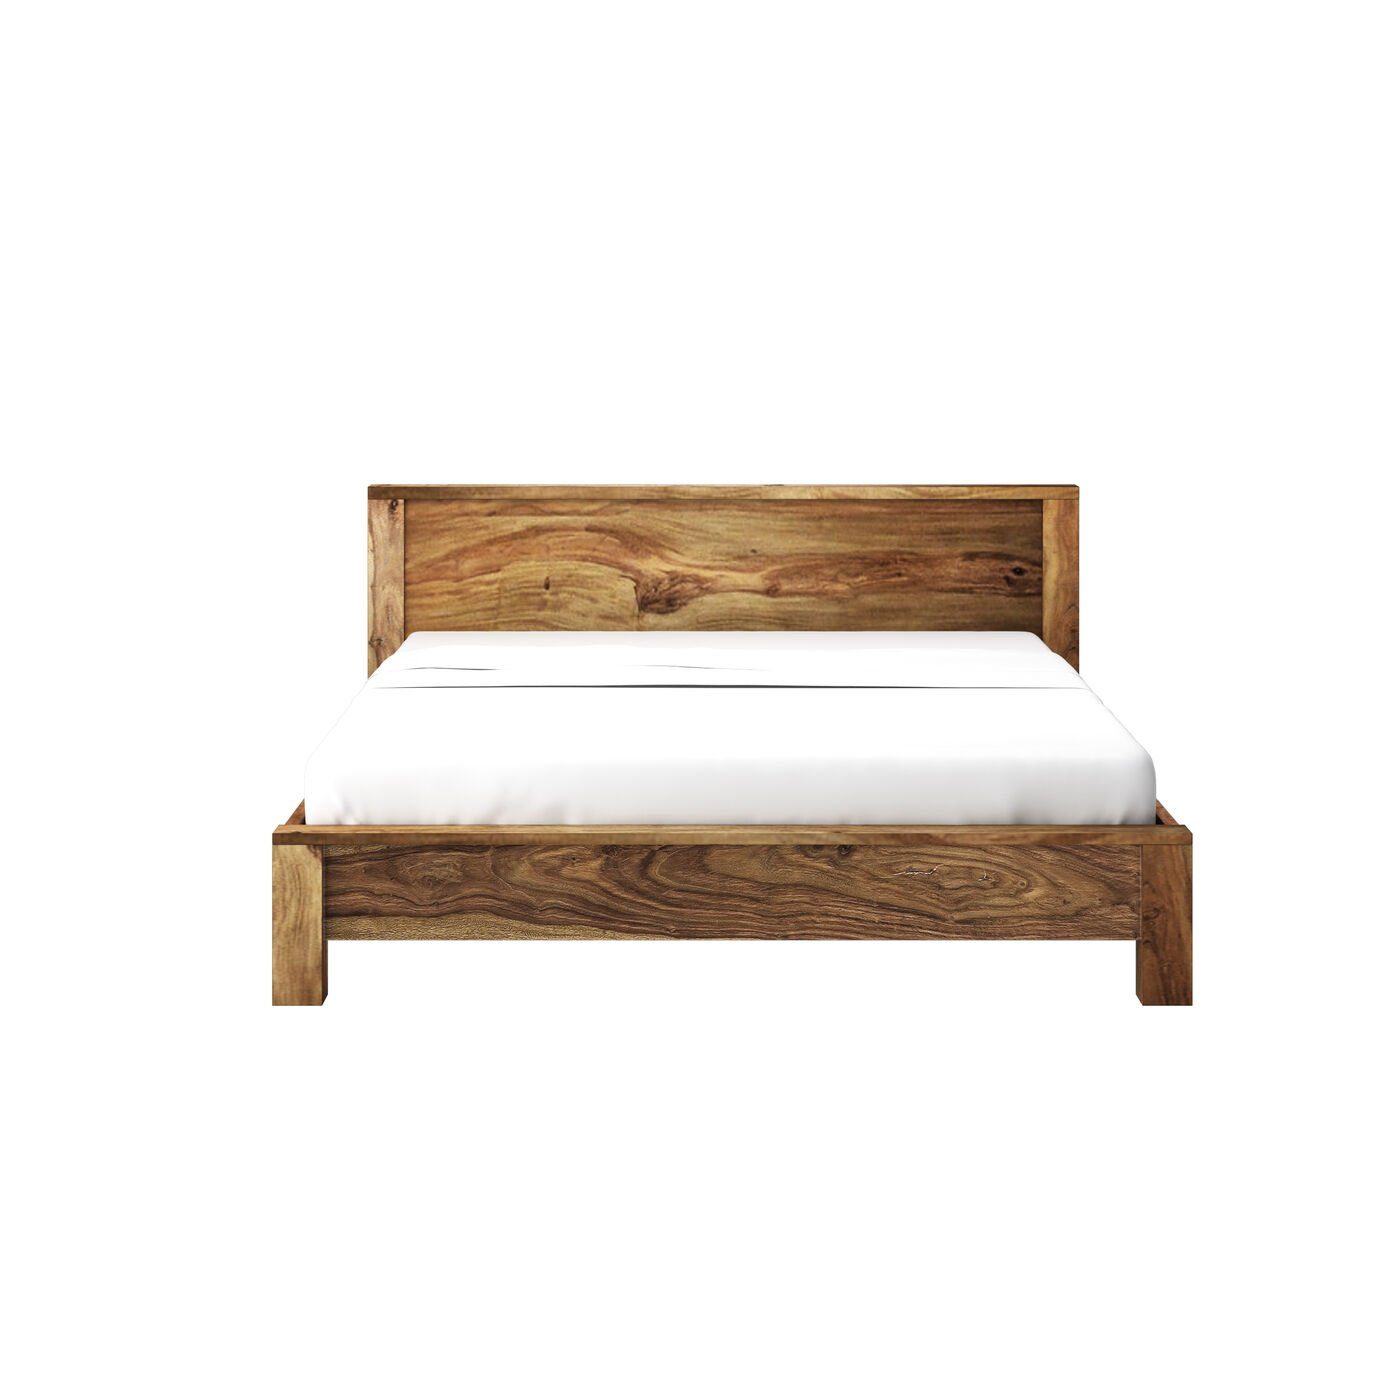 KARE Bett »Authentico Bett 160x200cm«, Farbe: Braun online kaufen | OTTO